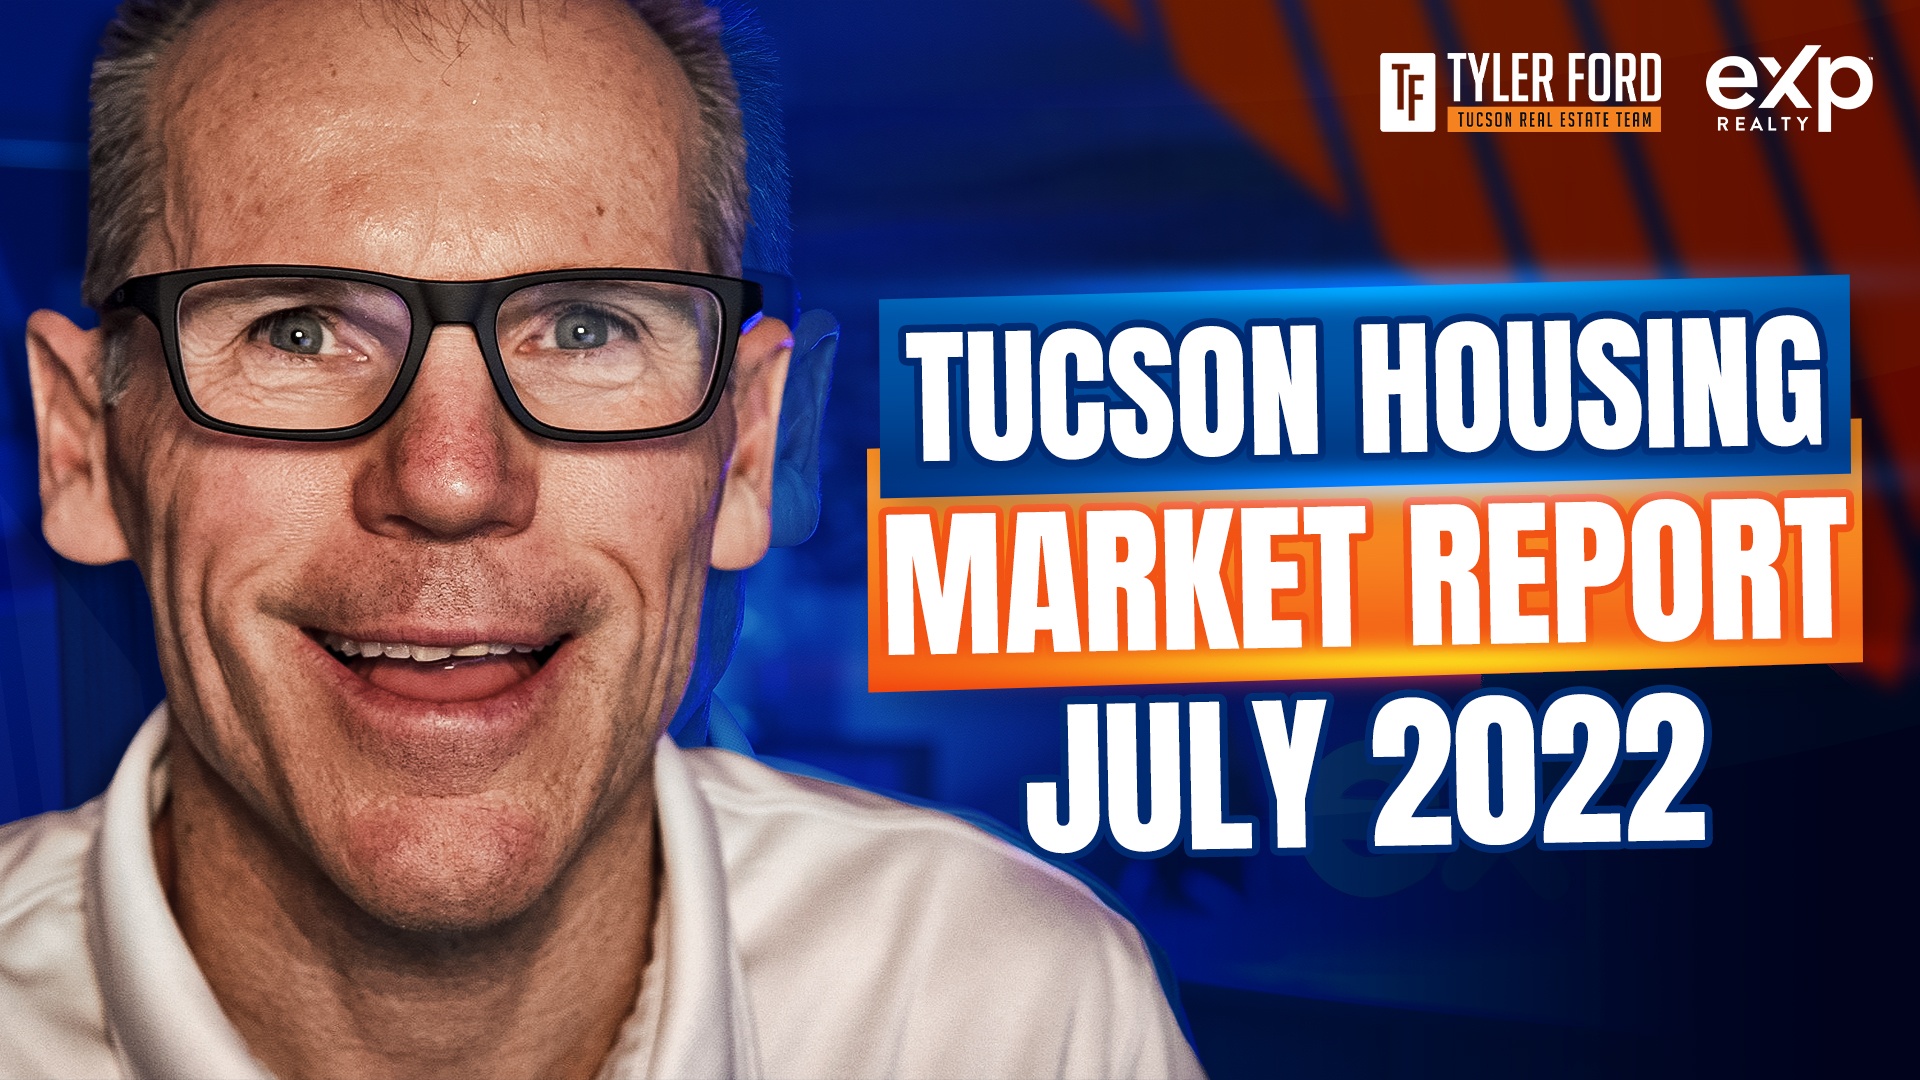 Tucson Arizona Residential Housing Market Report For June 2022